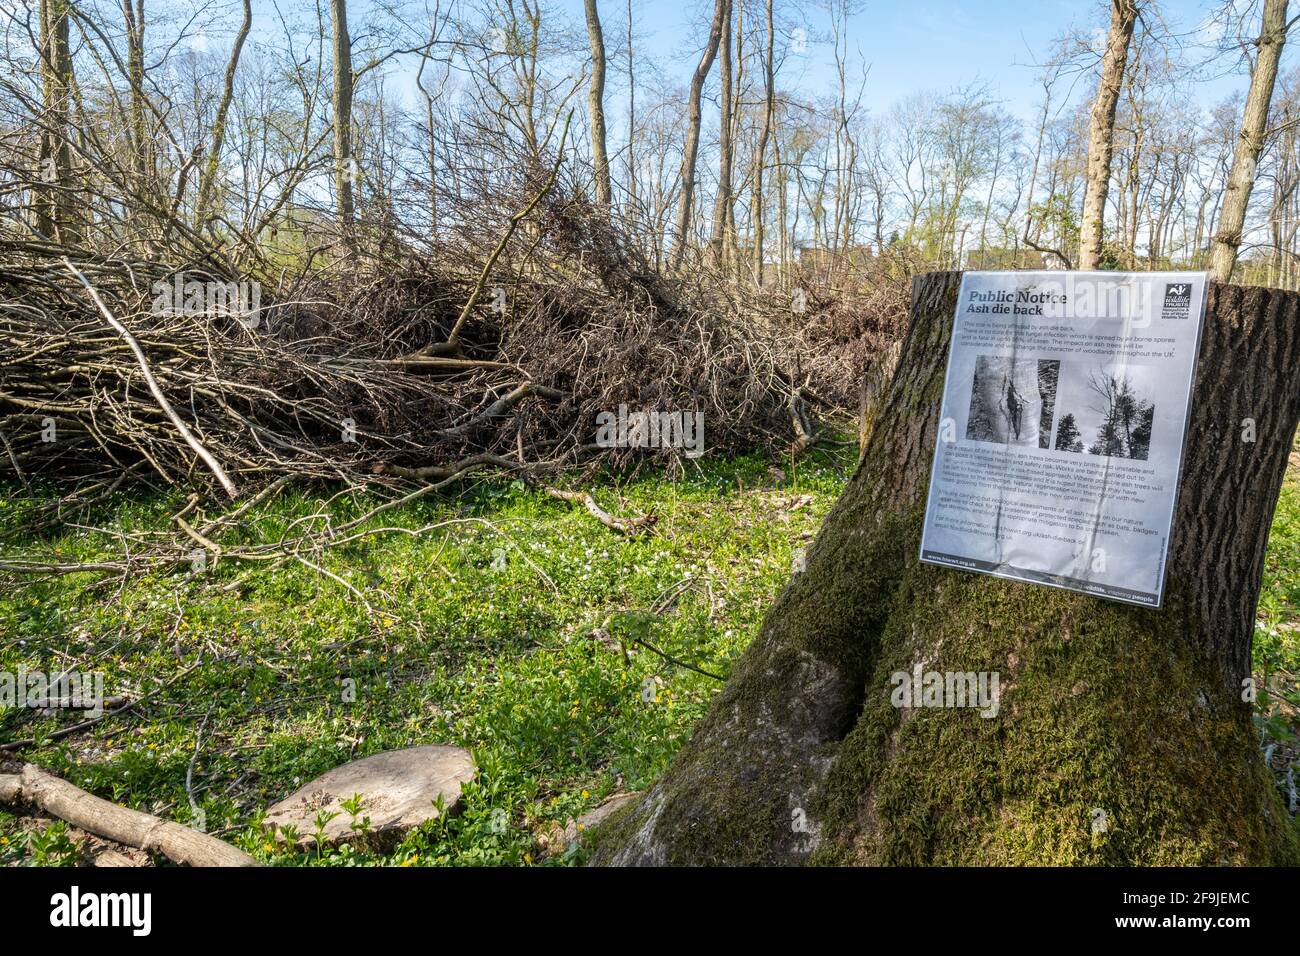 Avis de maladie des arbres de dépérissement des cendres dans les bois avec des cendre hachés pour des raisons de sécurité, Hampshire, Angleterre, Royaume-Uni Banque D'Images